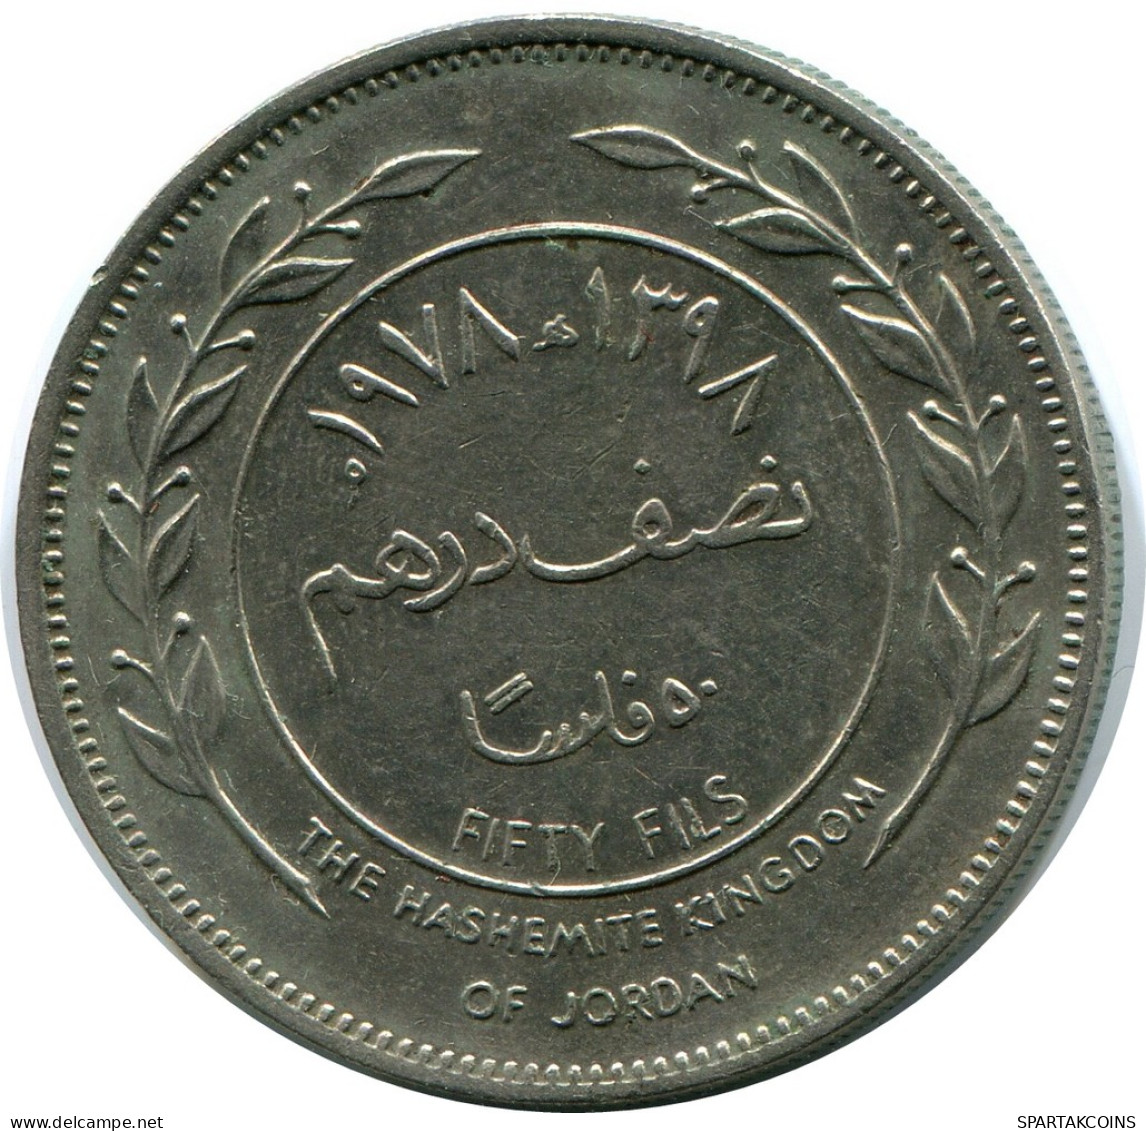 ½ DIRHAM / 50 FILS 1978 JORDAN Coin #AP074.U - Jordan